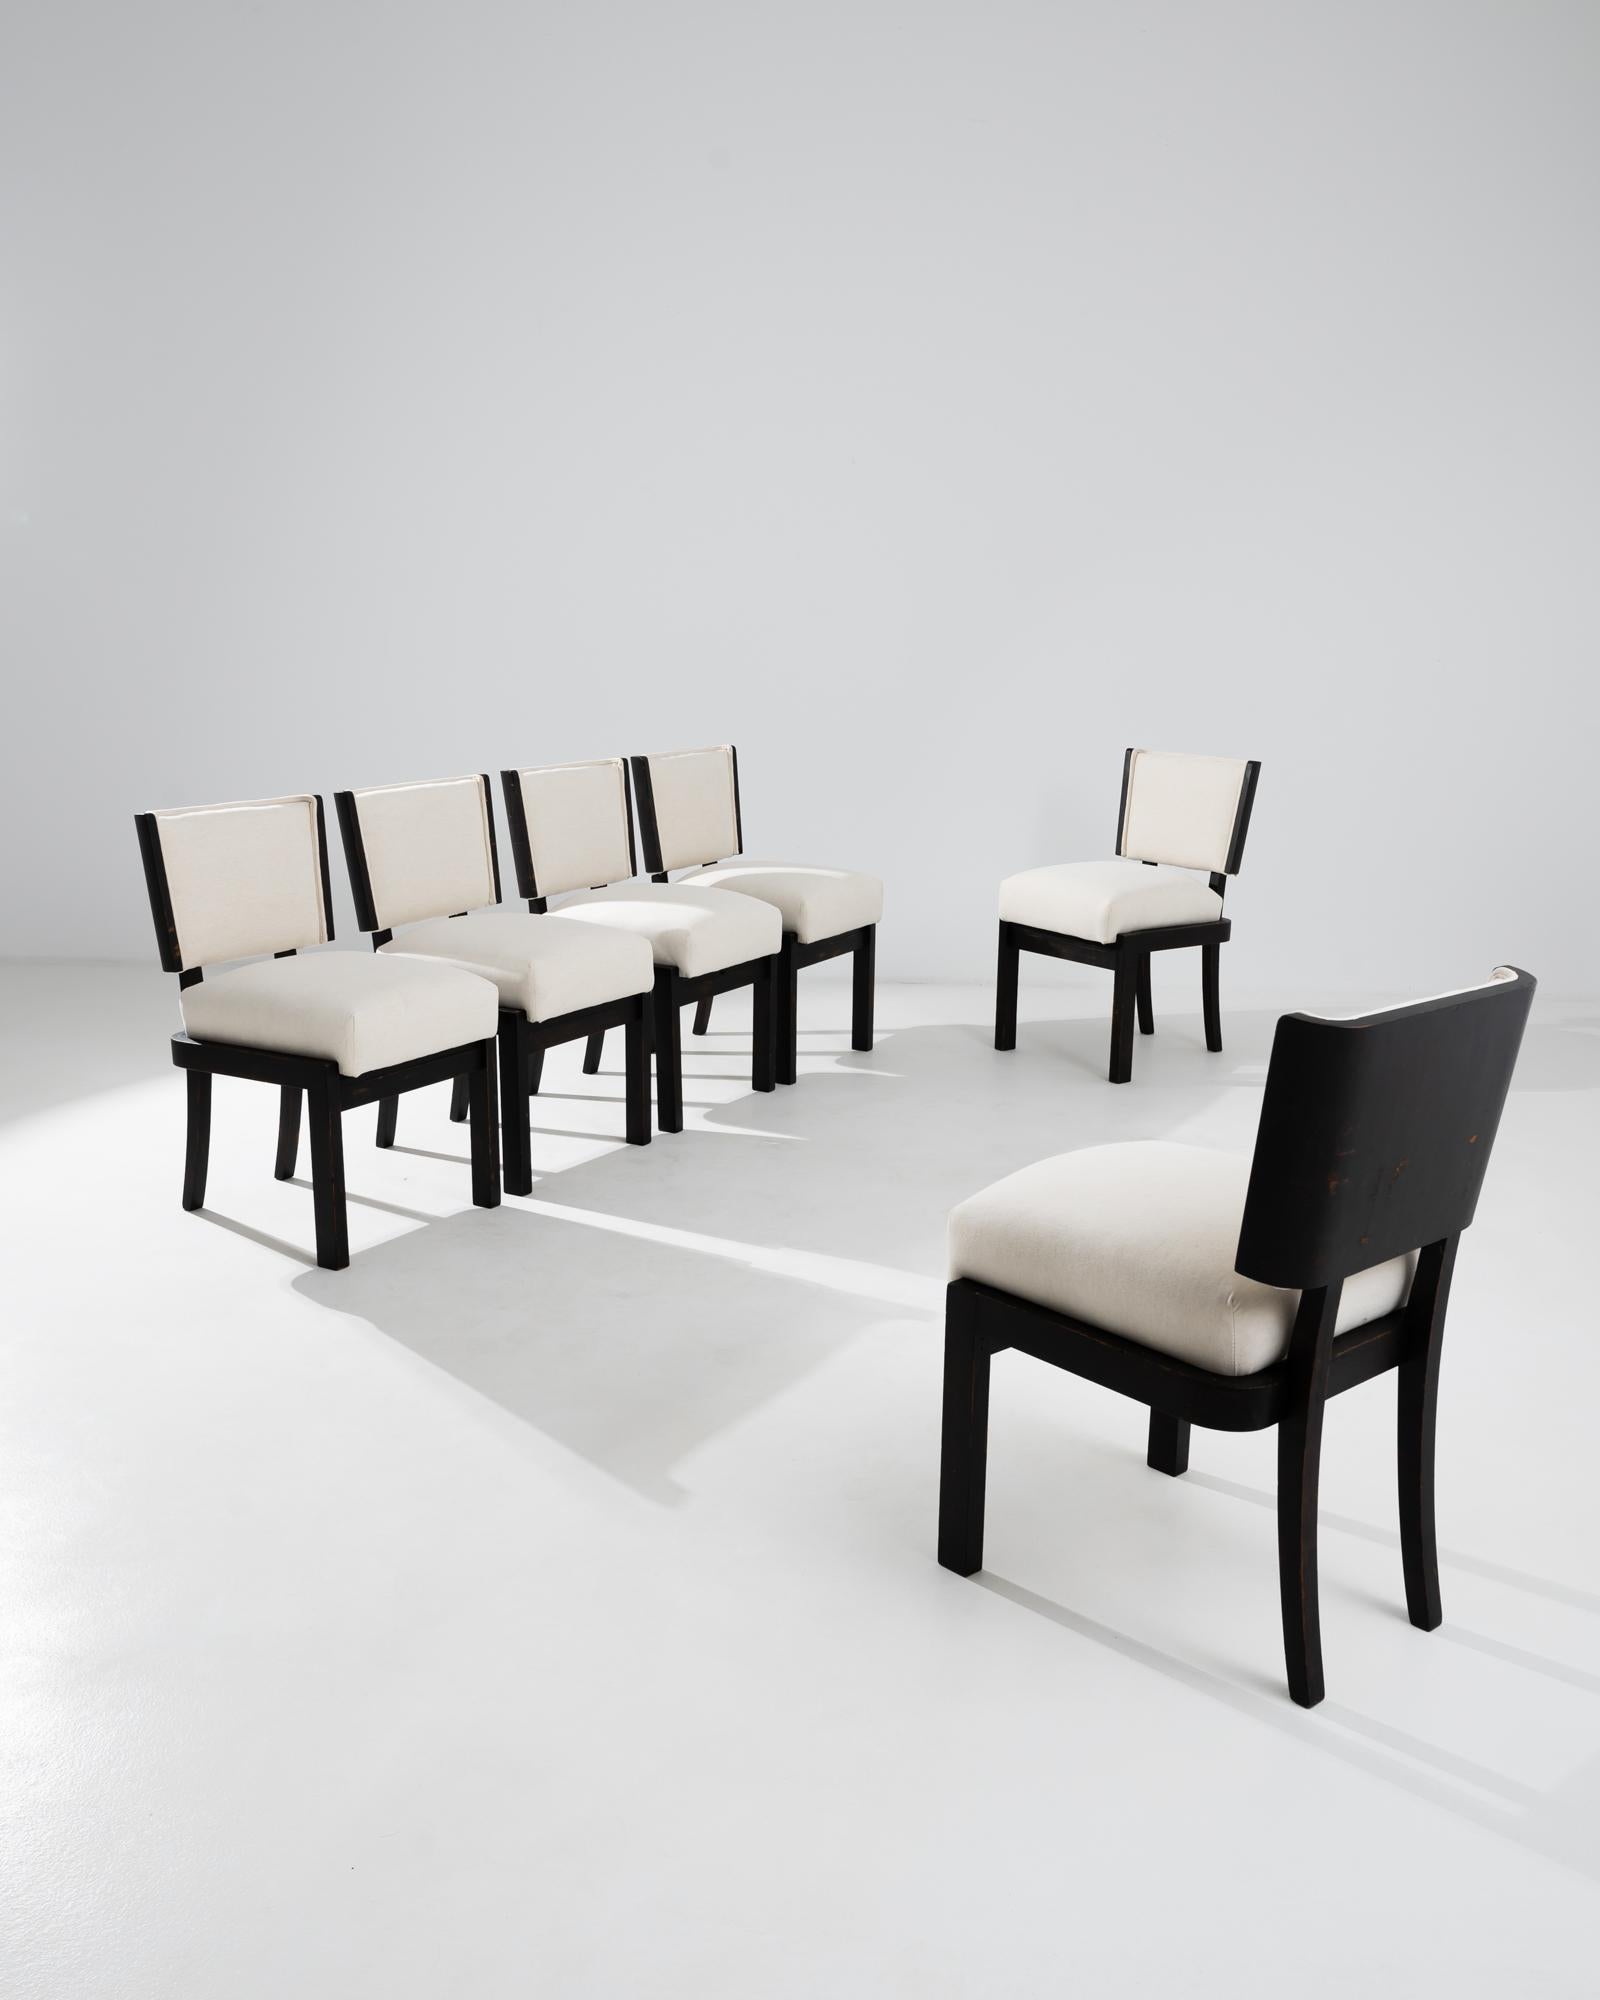 Un ensemble de meubles rembourrés en bois  chaises de salle à manger des années 1930 en Tchécoslovaquie. Cet ensemble de chaises du début des années 1930 évoque le sens du design géométrique du modernisme d'Europe centrale, tout en affichant une